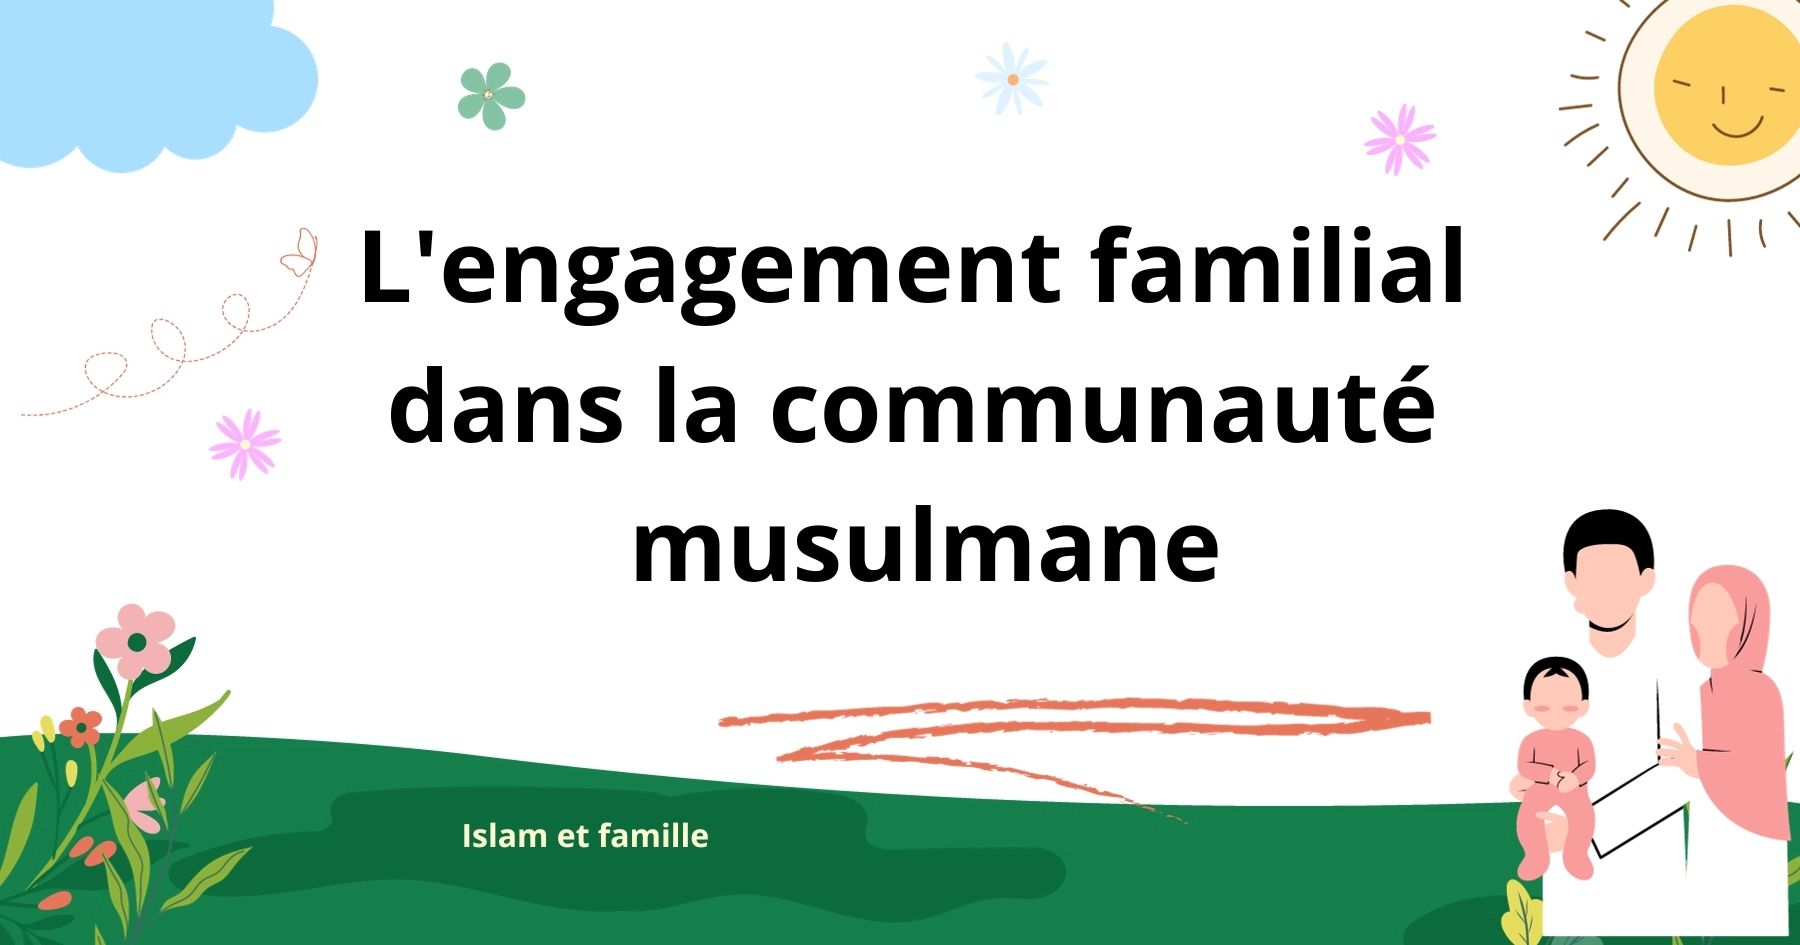 L'engagement familial dans la communauté musulmane